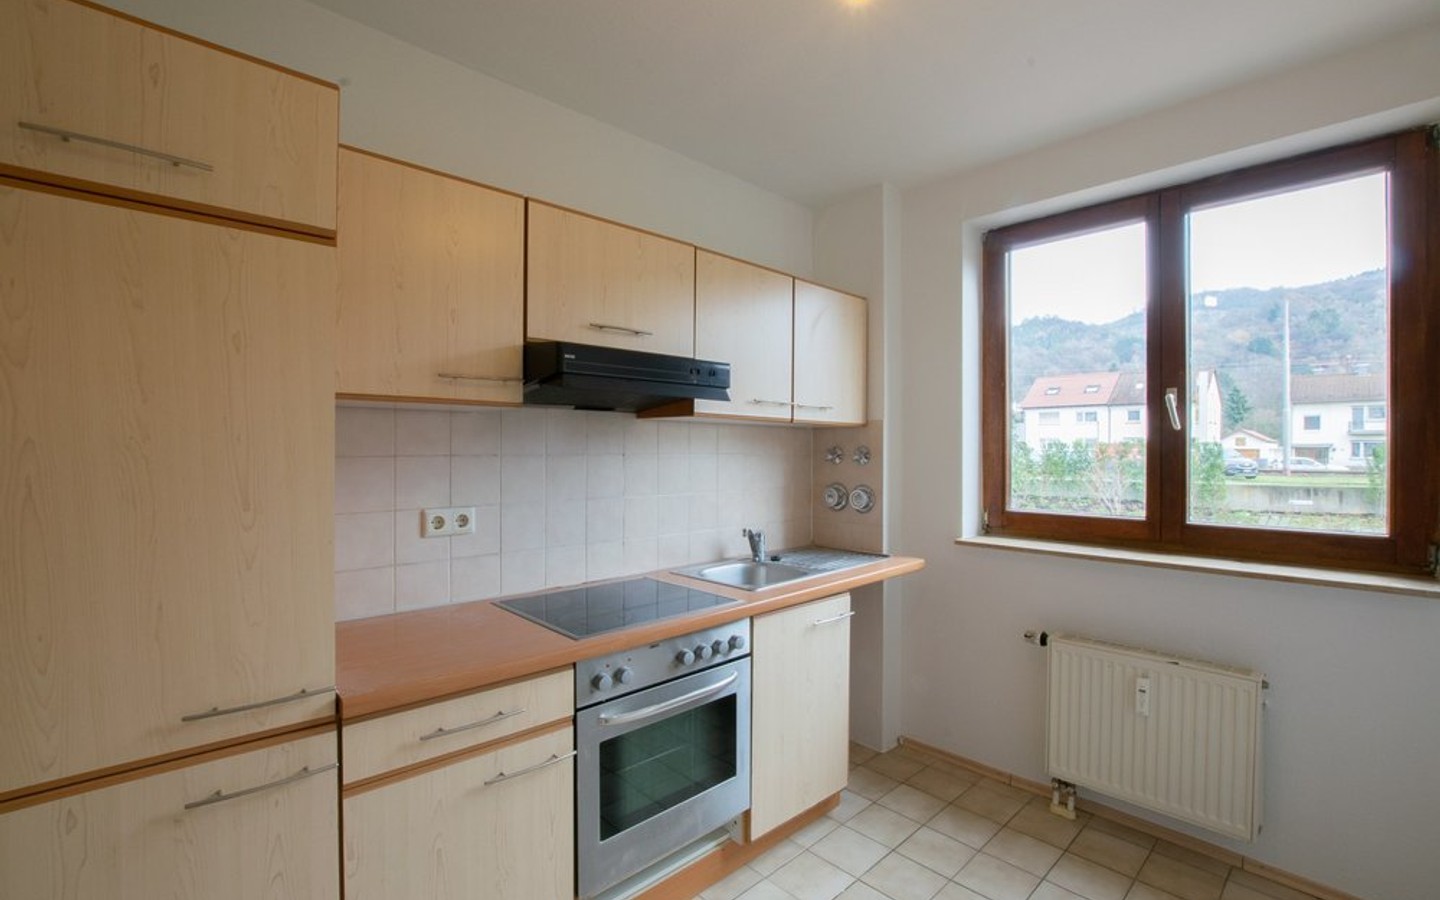 Küche - Dossenheim: Gemütliche Hochparterrewohnung mit Balkon und Stellplatz